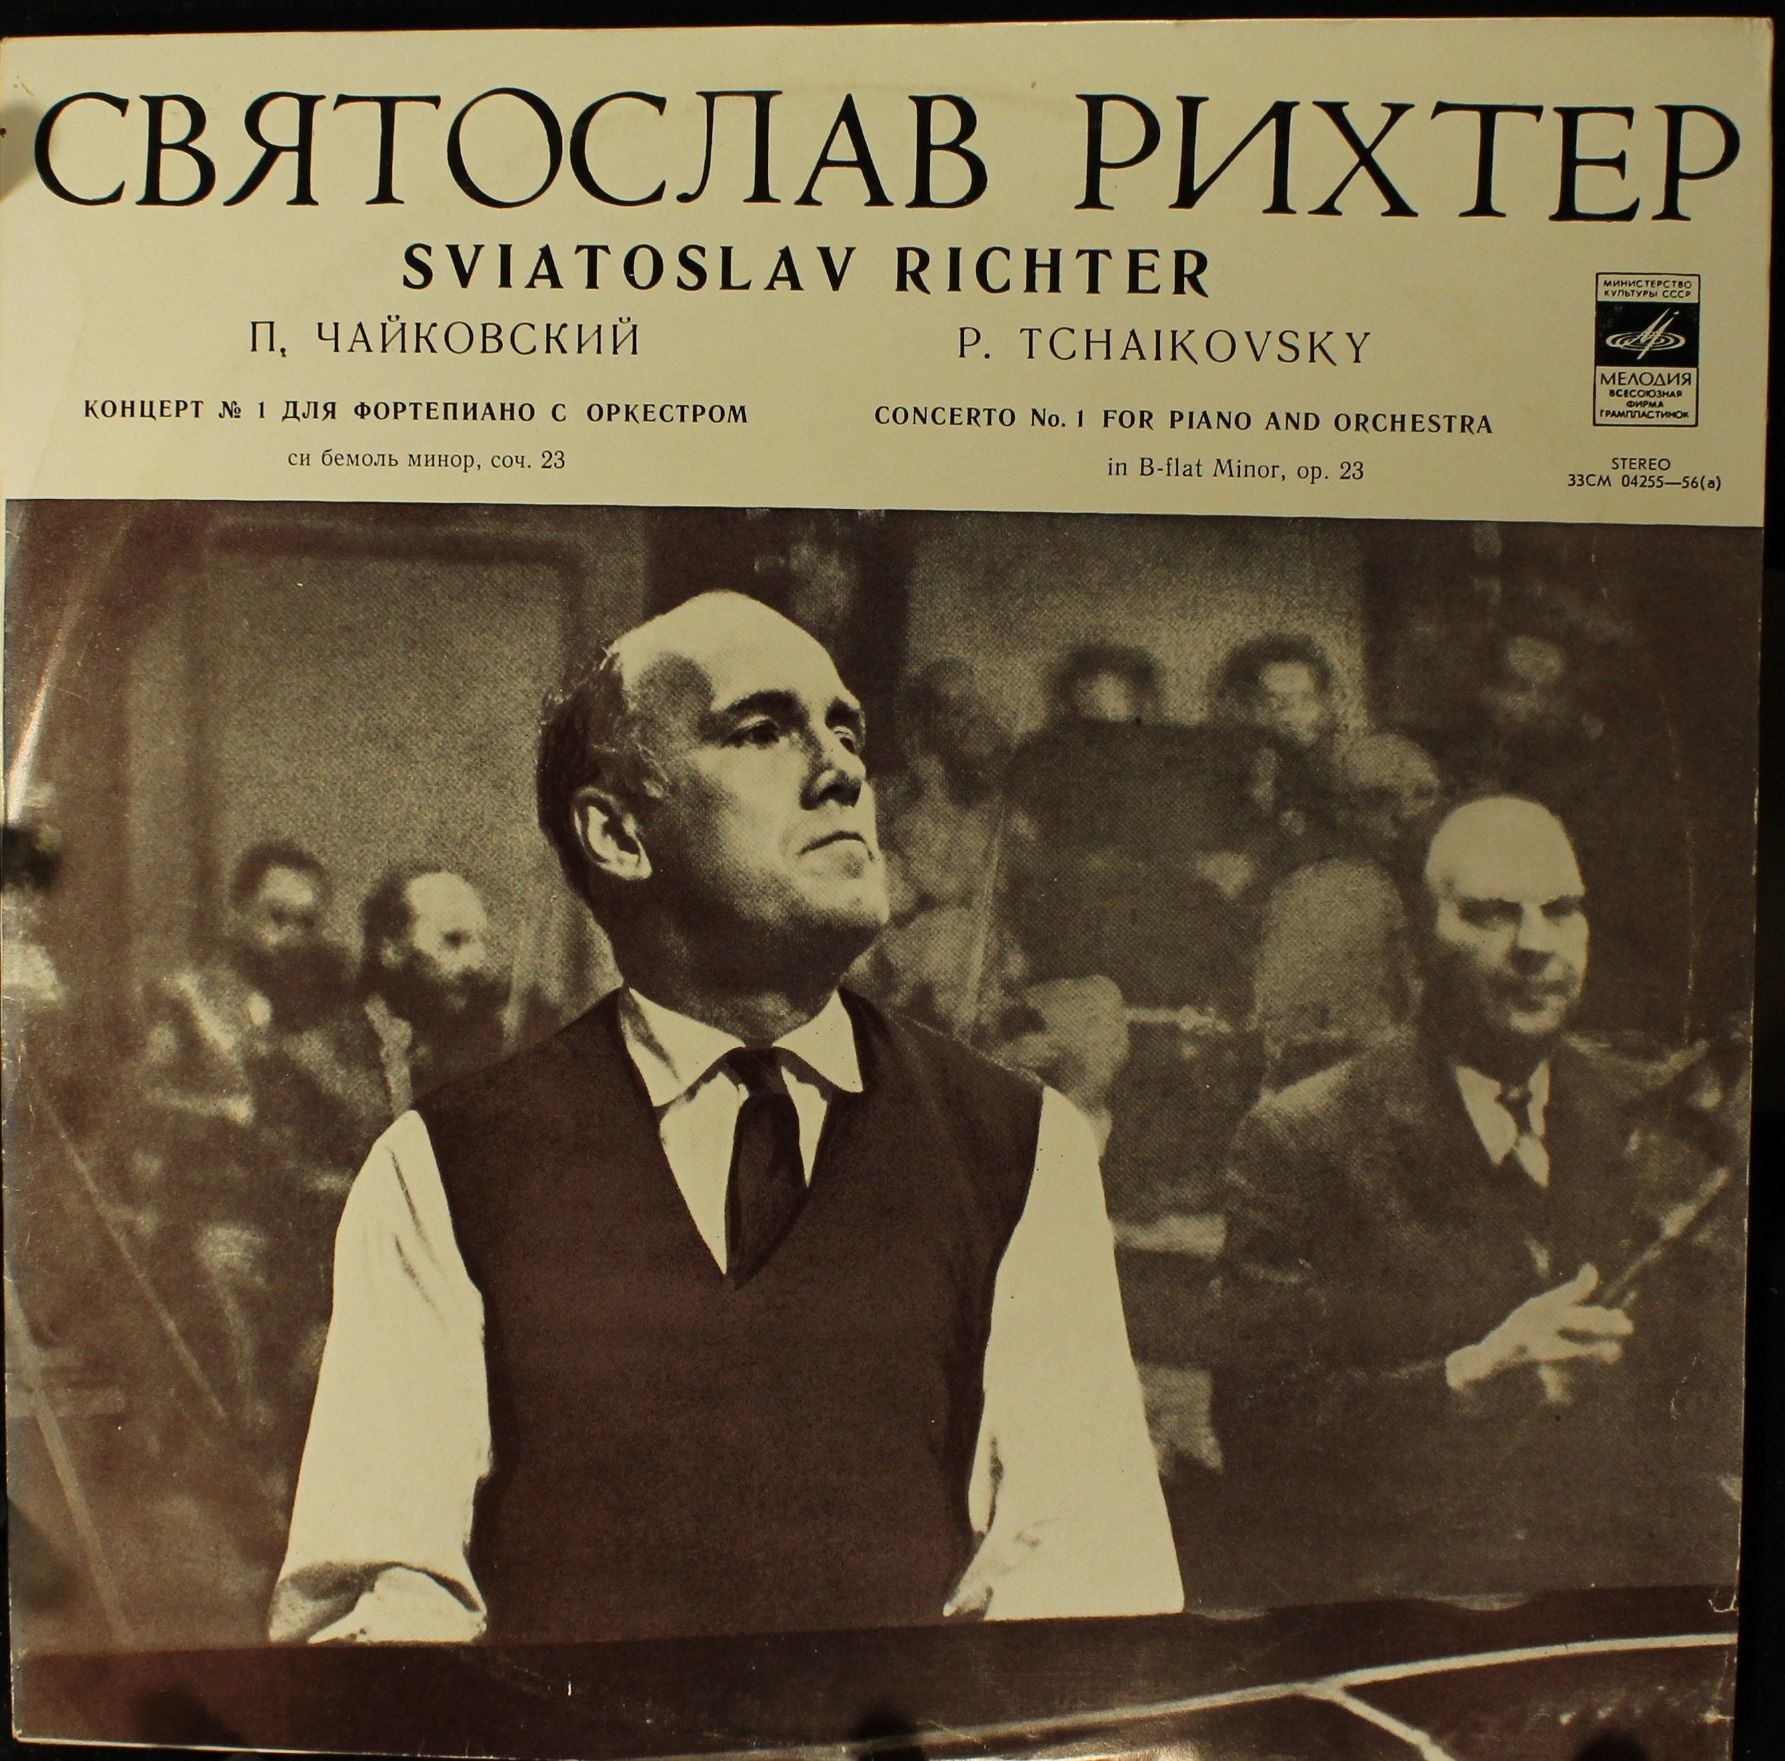 П. Чайковский: Концерт № 1 для ф-но с оркестром (С. Рихтер, Г. Караян)